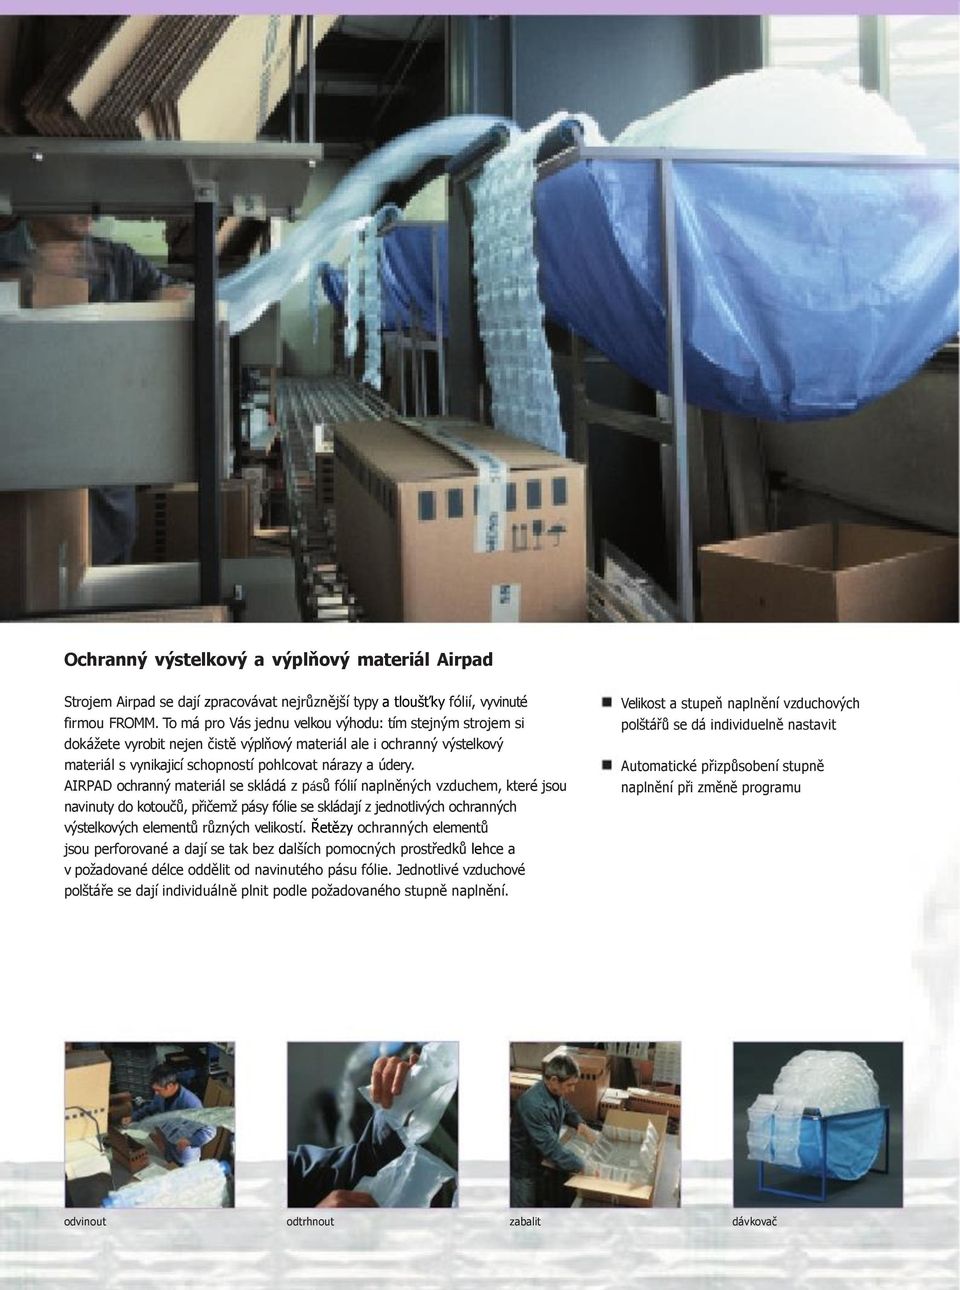 AIRPAD ochranný materiál se skládá z pásů fólií naplněných vzduchem, které jsou navinuty do kotoučů, přičemž pásy fólie se skládají z jednotlivých ochranných výstelkových elementů různých velikostí.